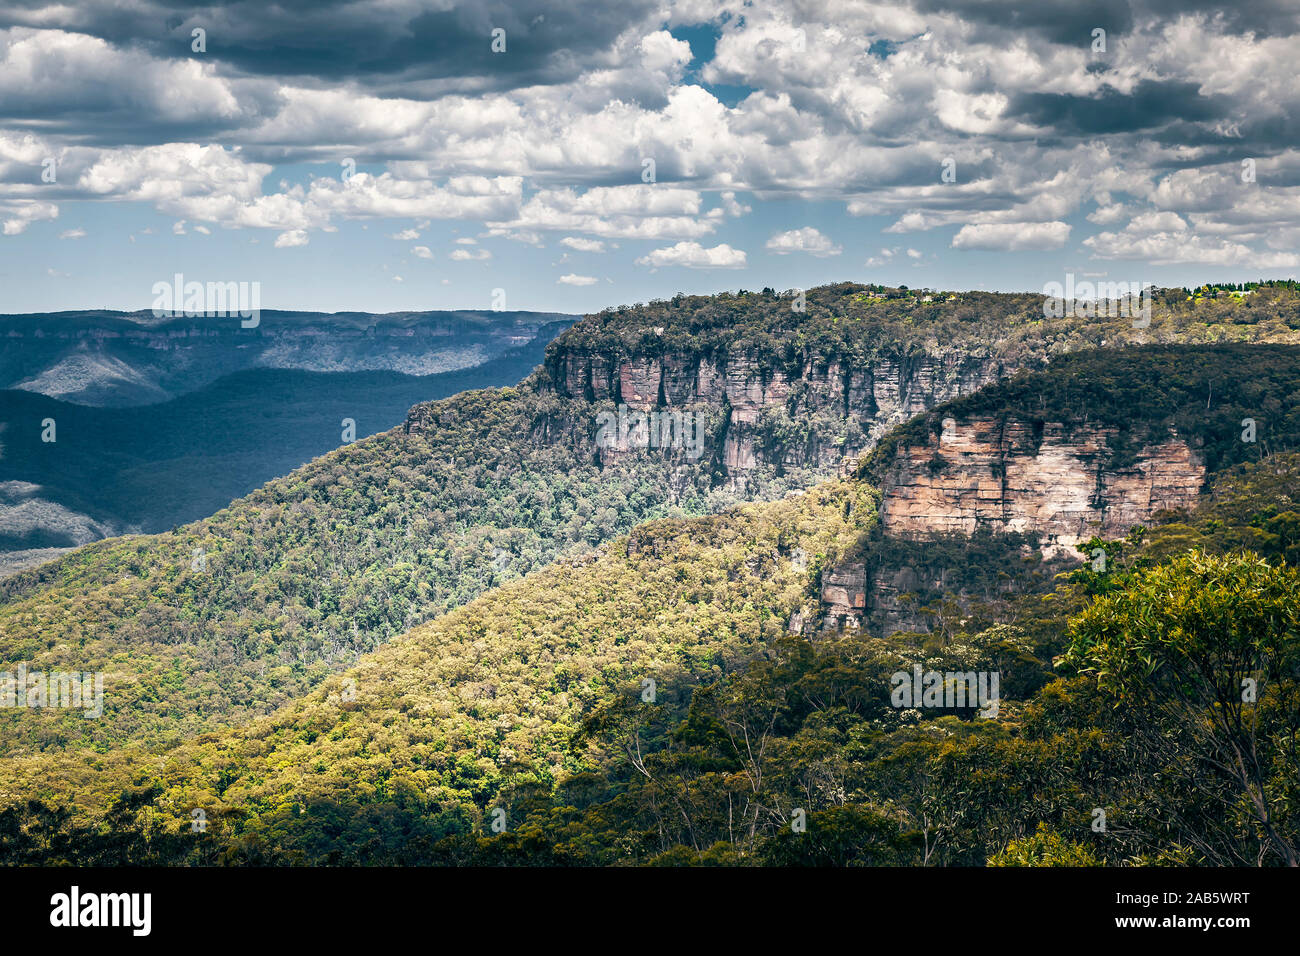 Ein Blick auf die Blauen Berge in Australien Stock Photo